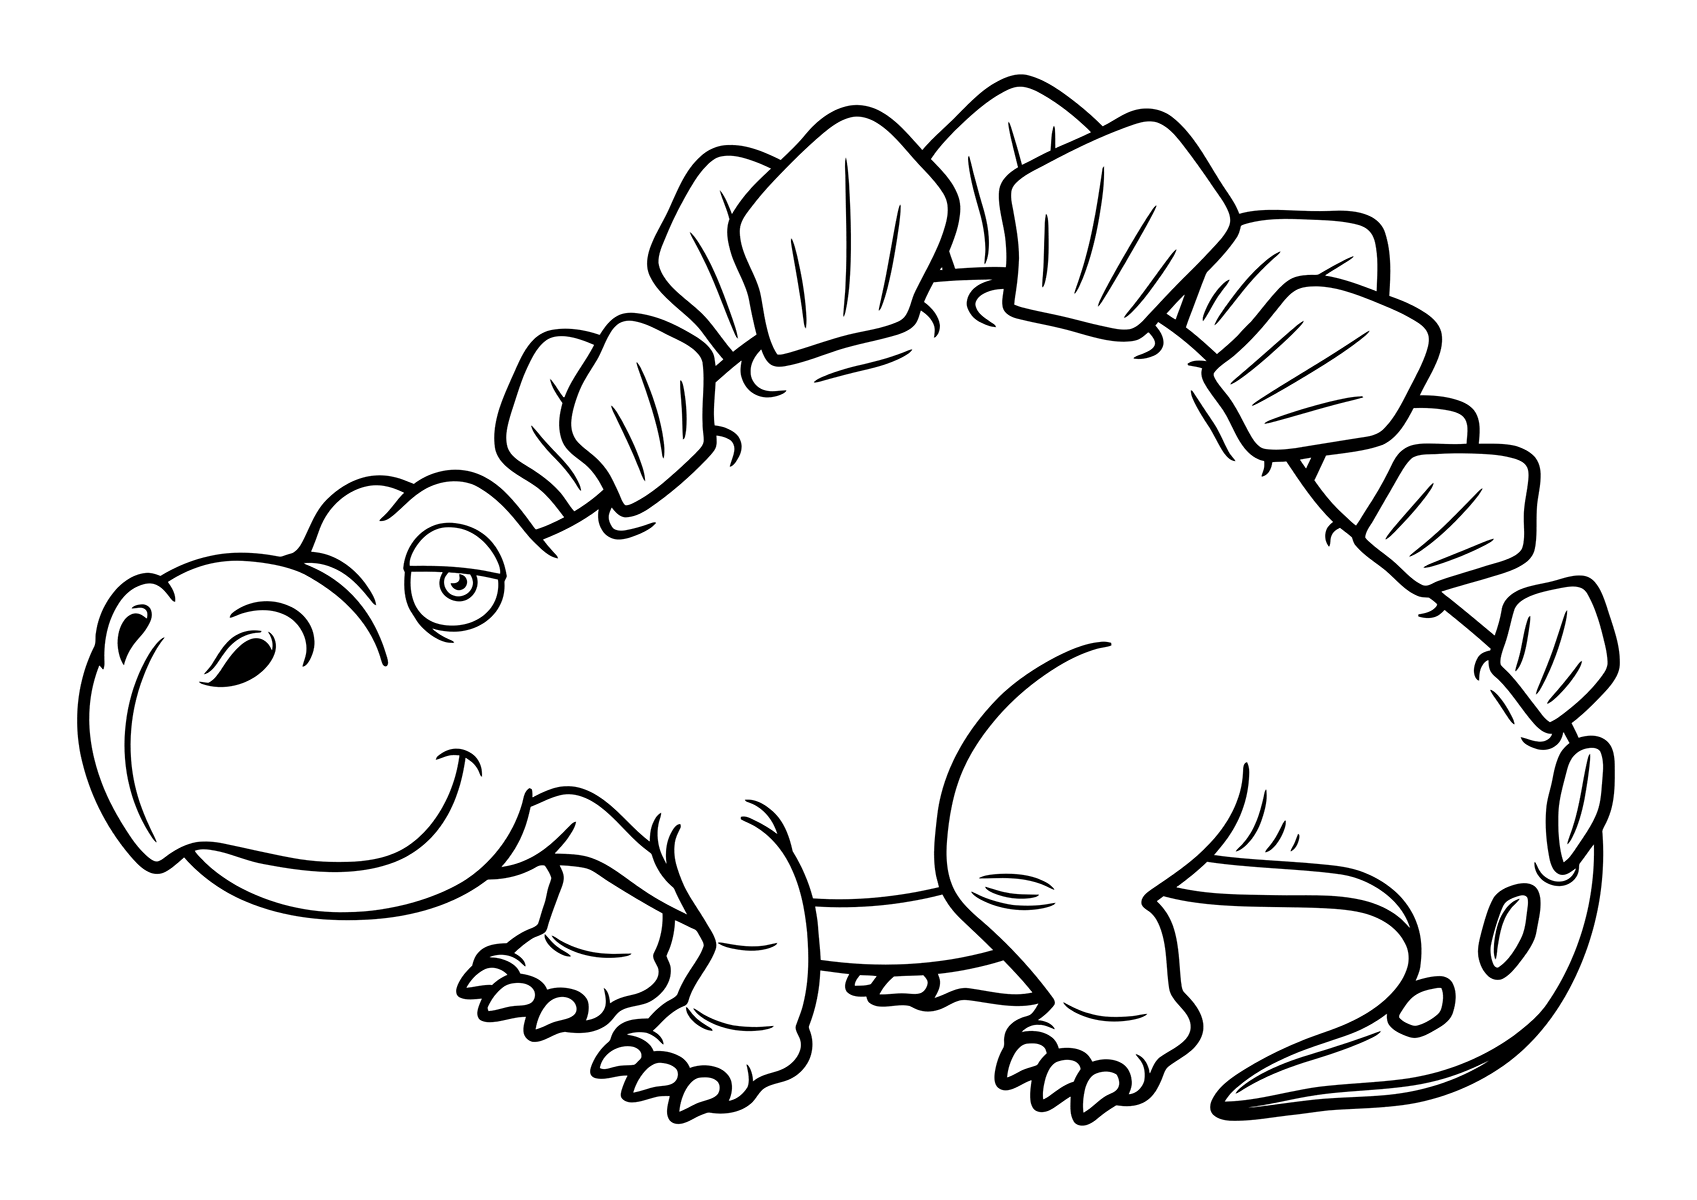 Раскраска Стегозавр